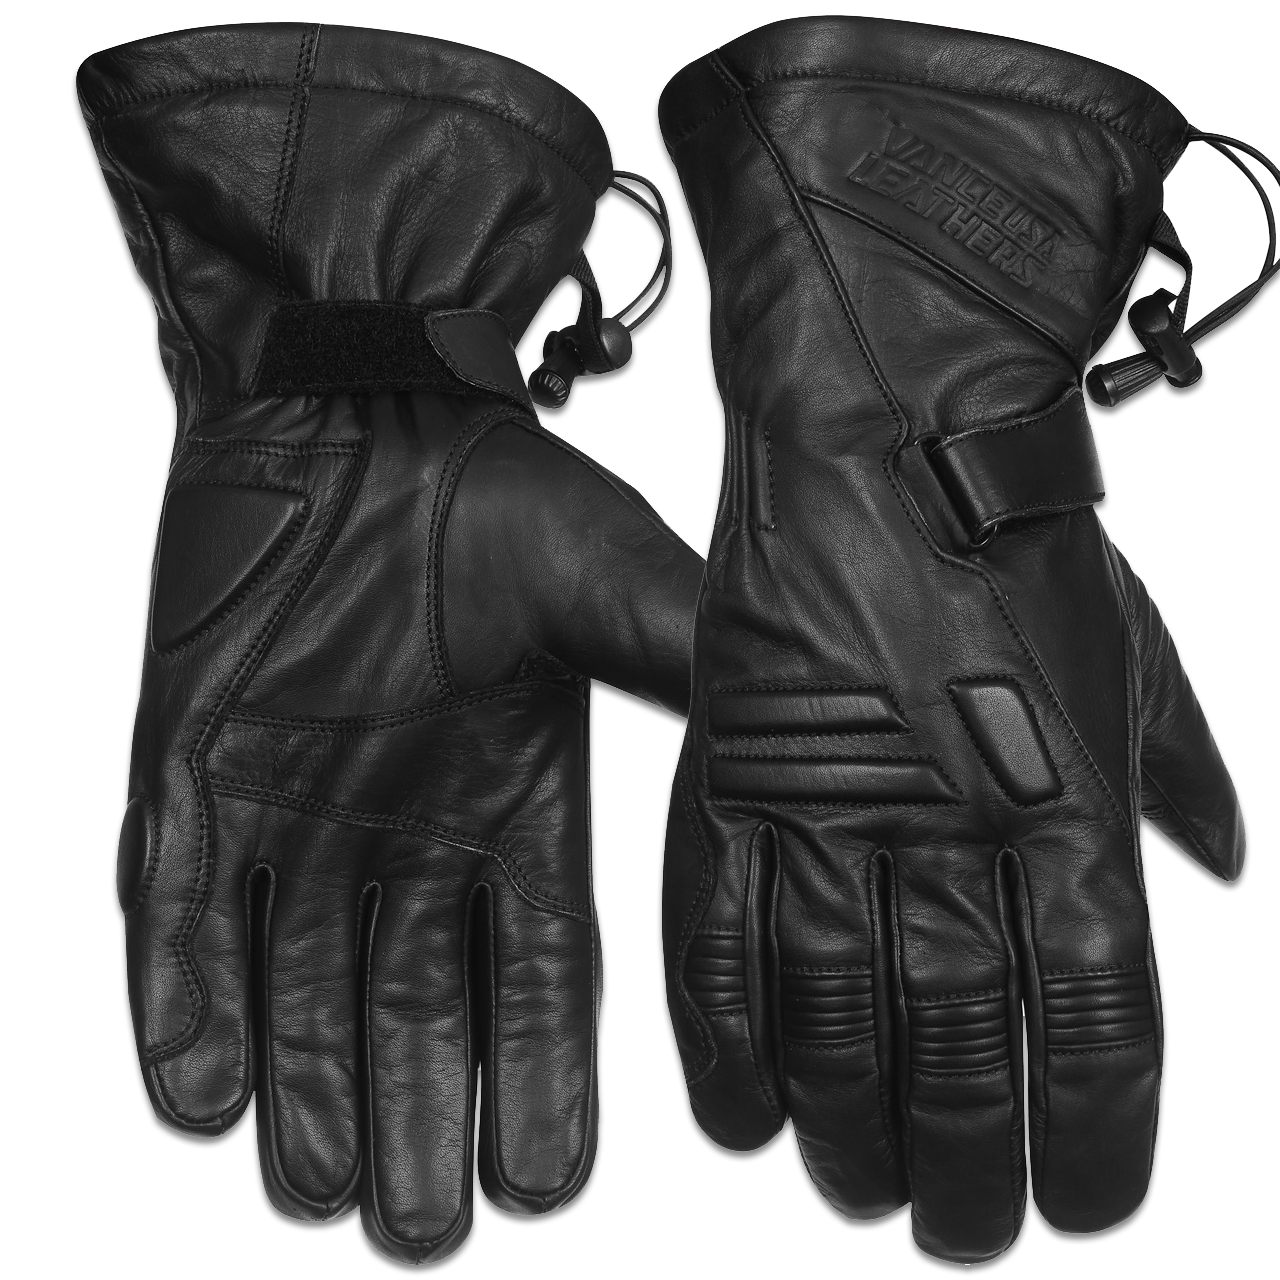 Vance VL410 Impulse Waterproof Leather Motorcycle Gloves - main